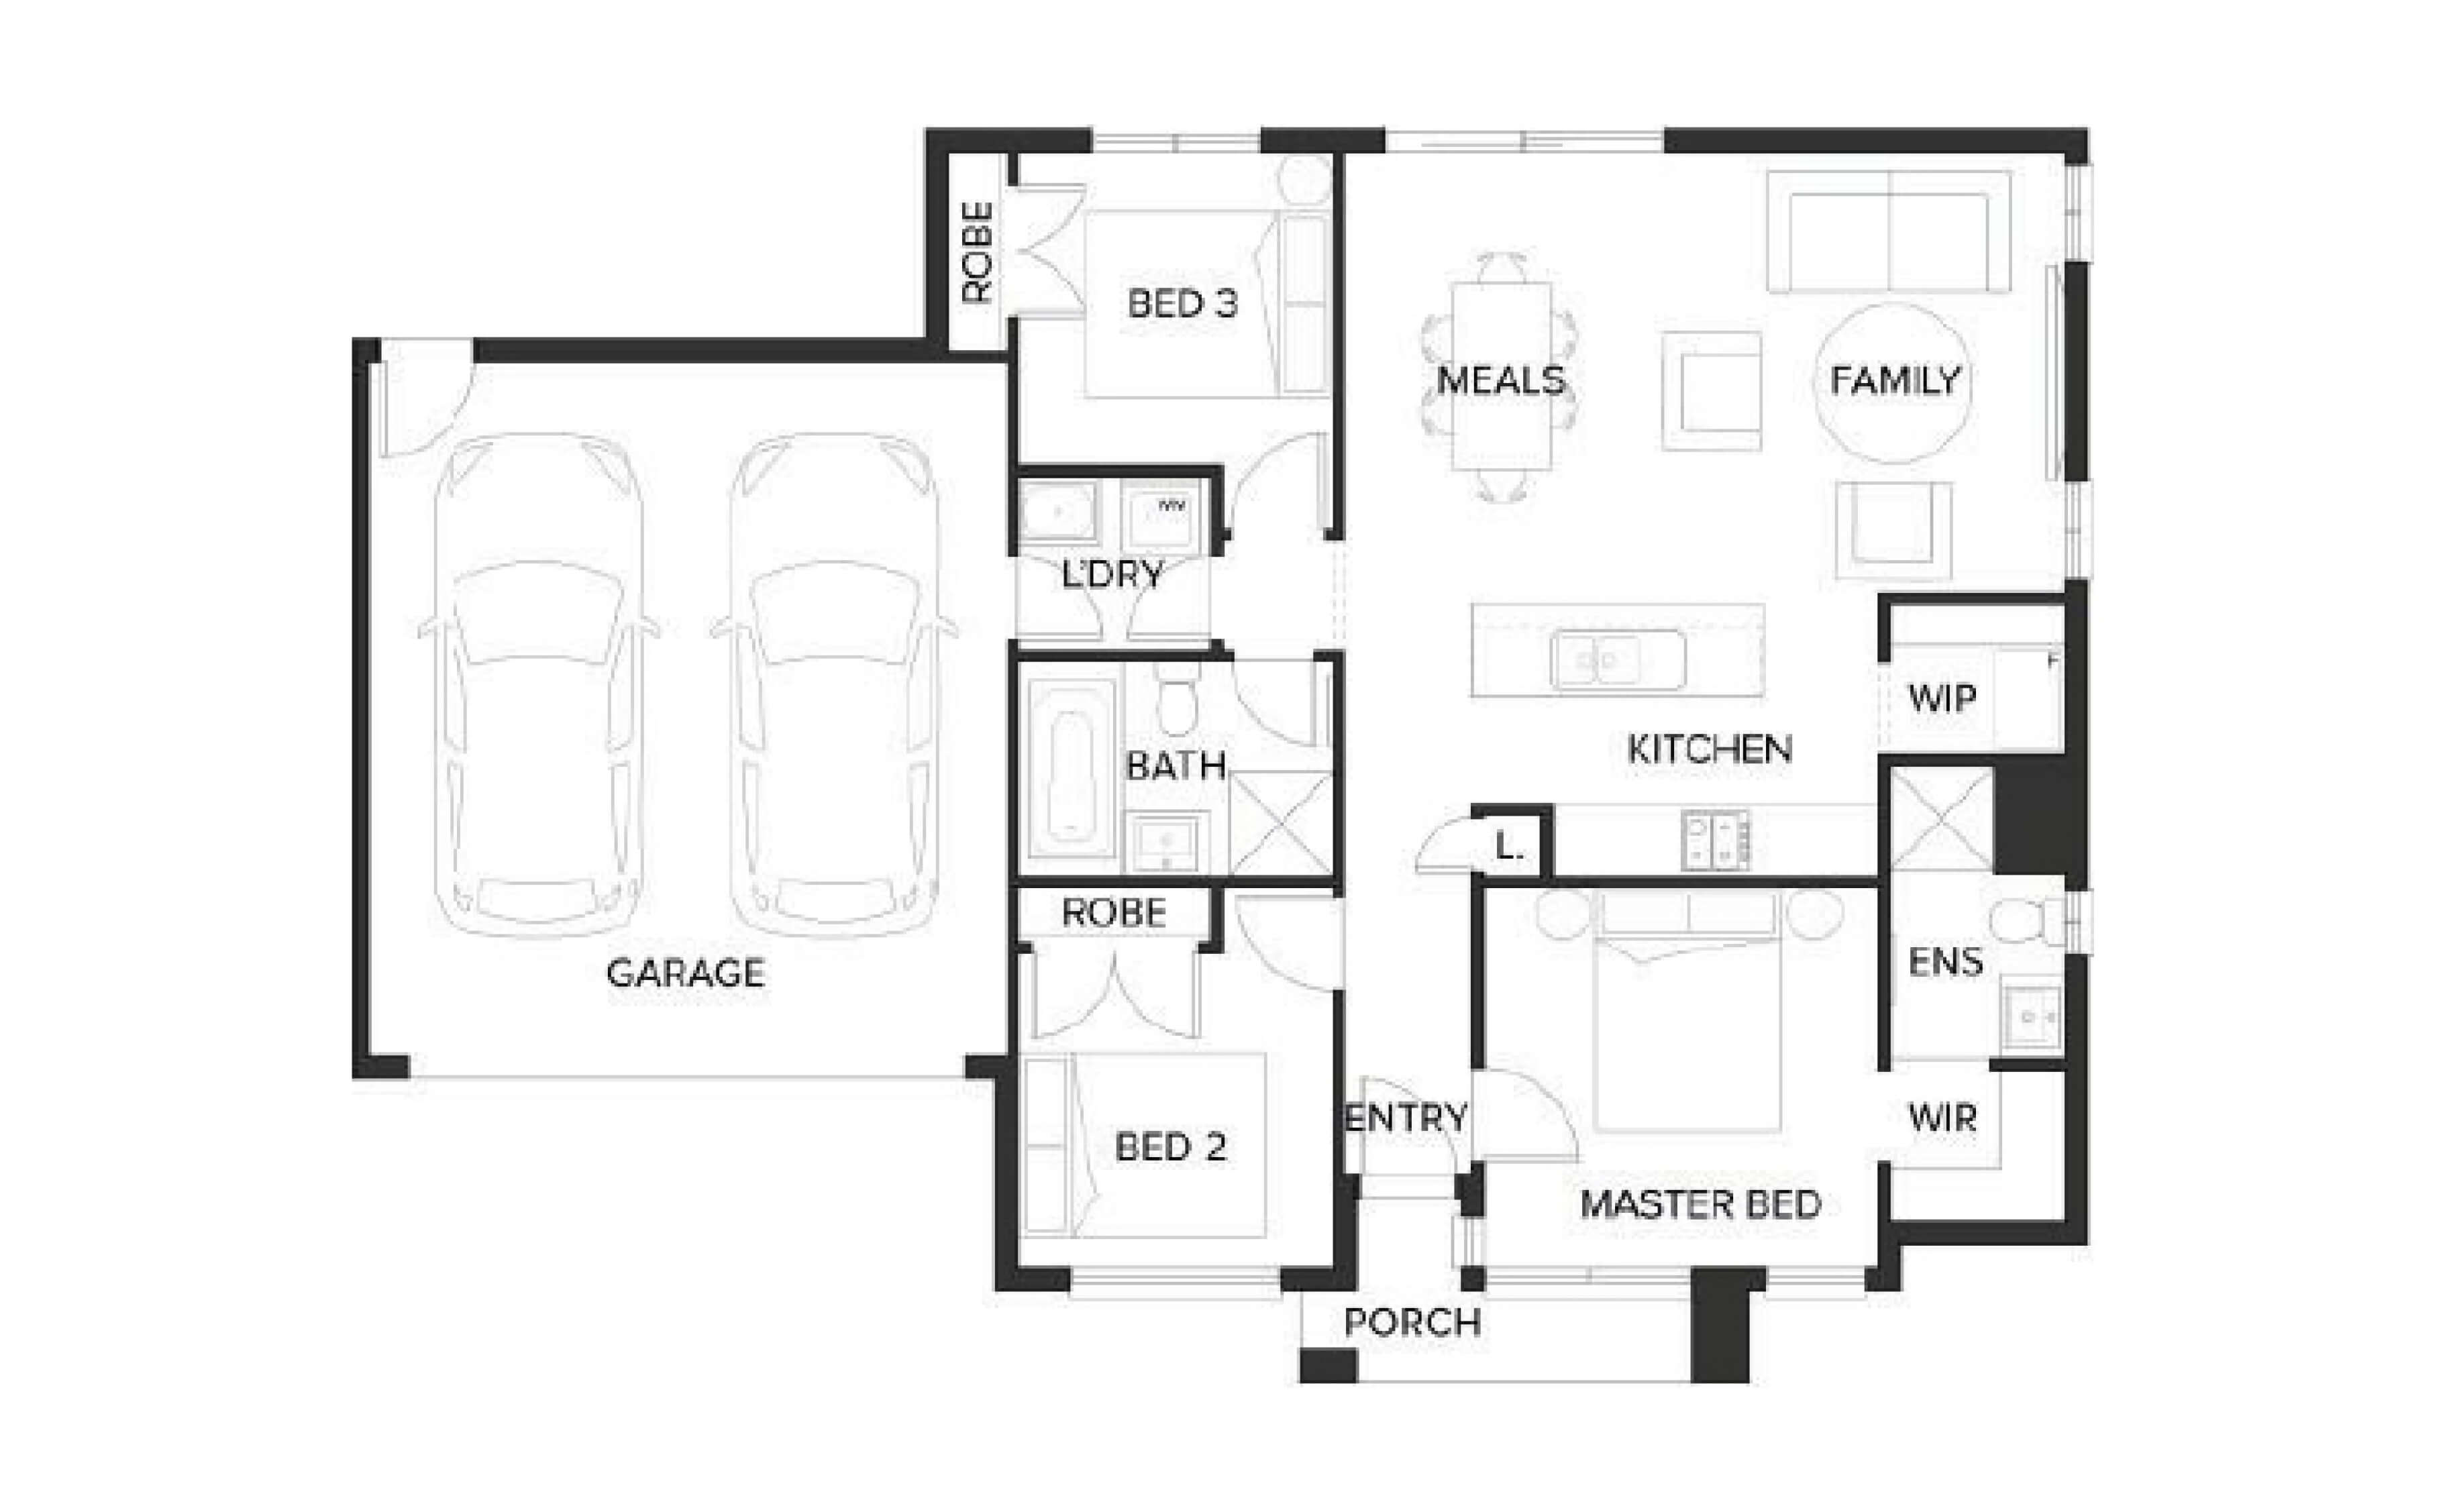 Lot /img/house-land/3058-subic/Floorplan/Thumb.jpg floorplan